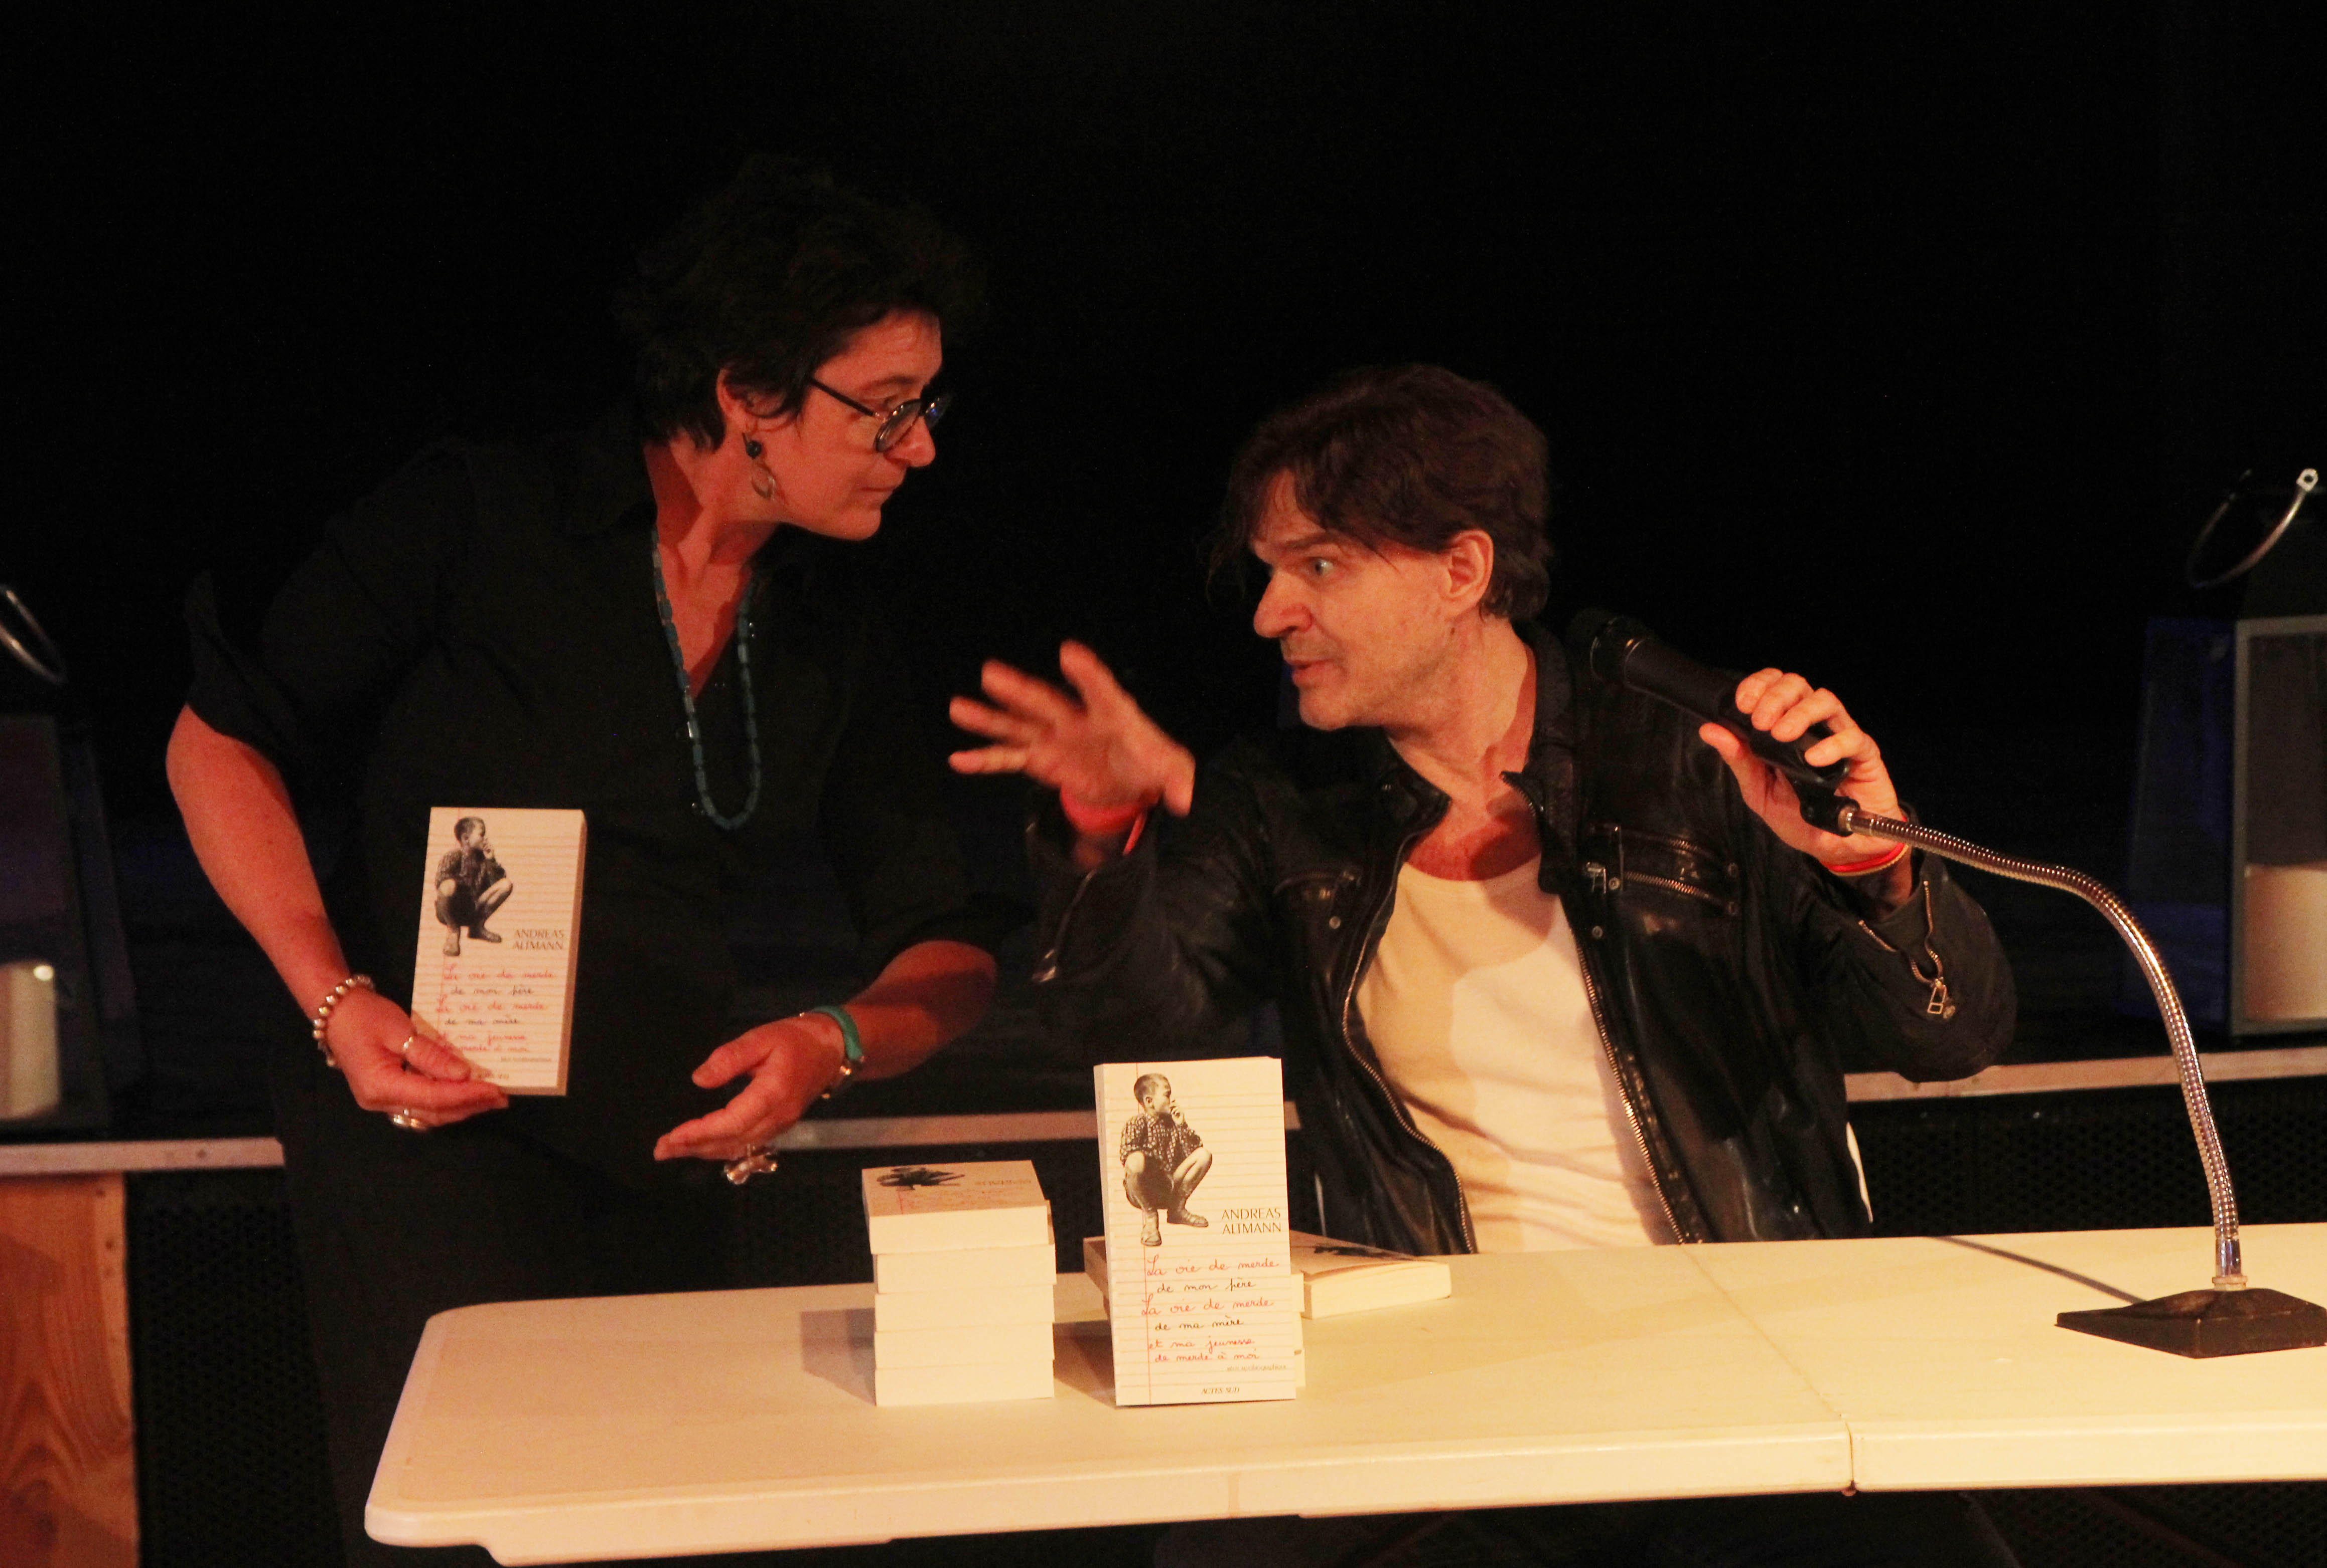 Rencontre littéraire Altman ARBRE à FEUILLE Myriam Bert